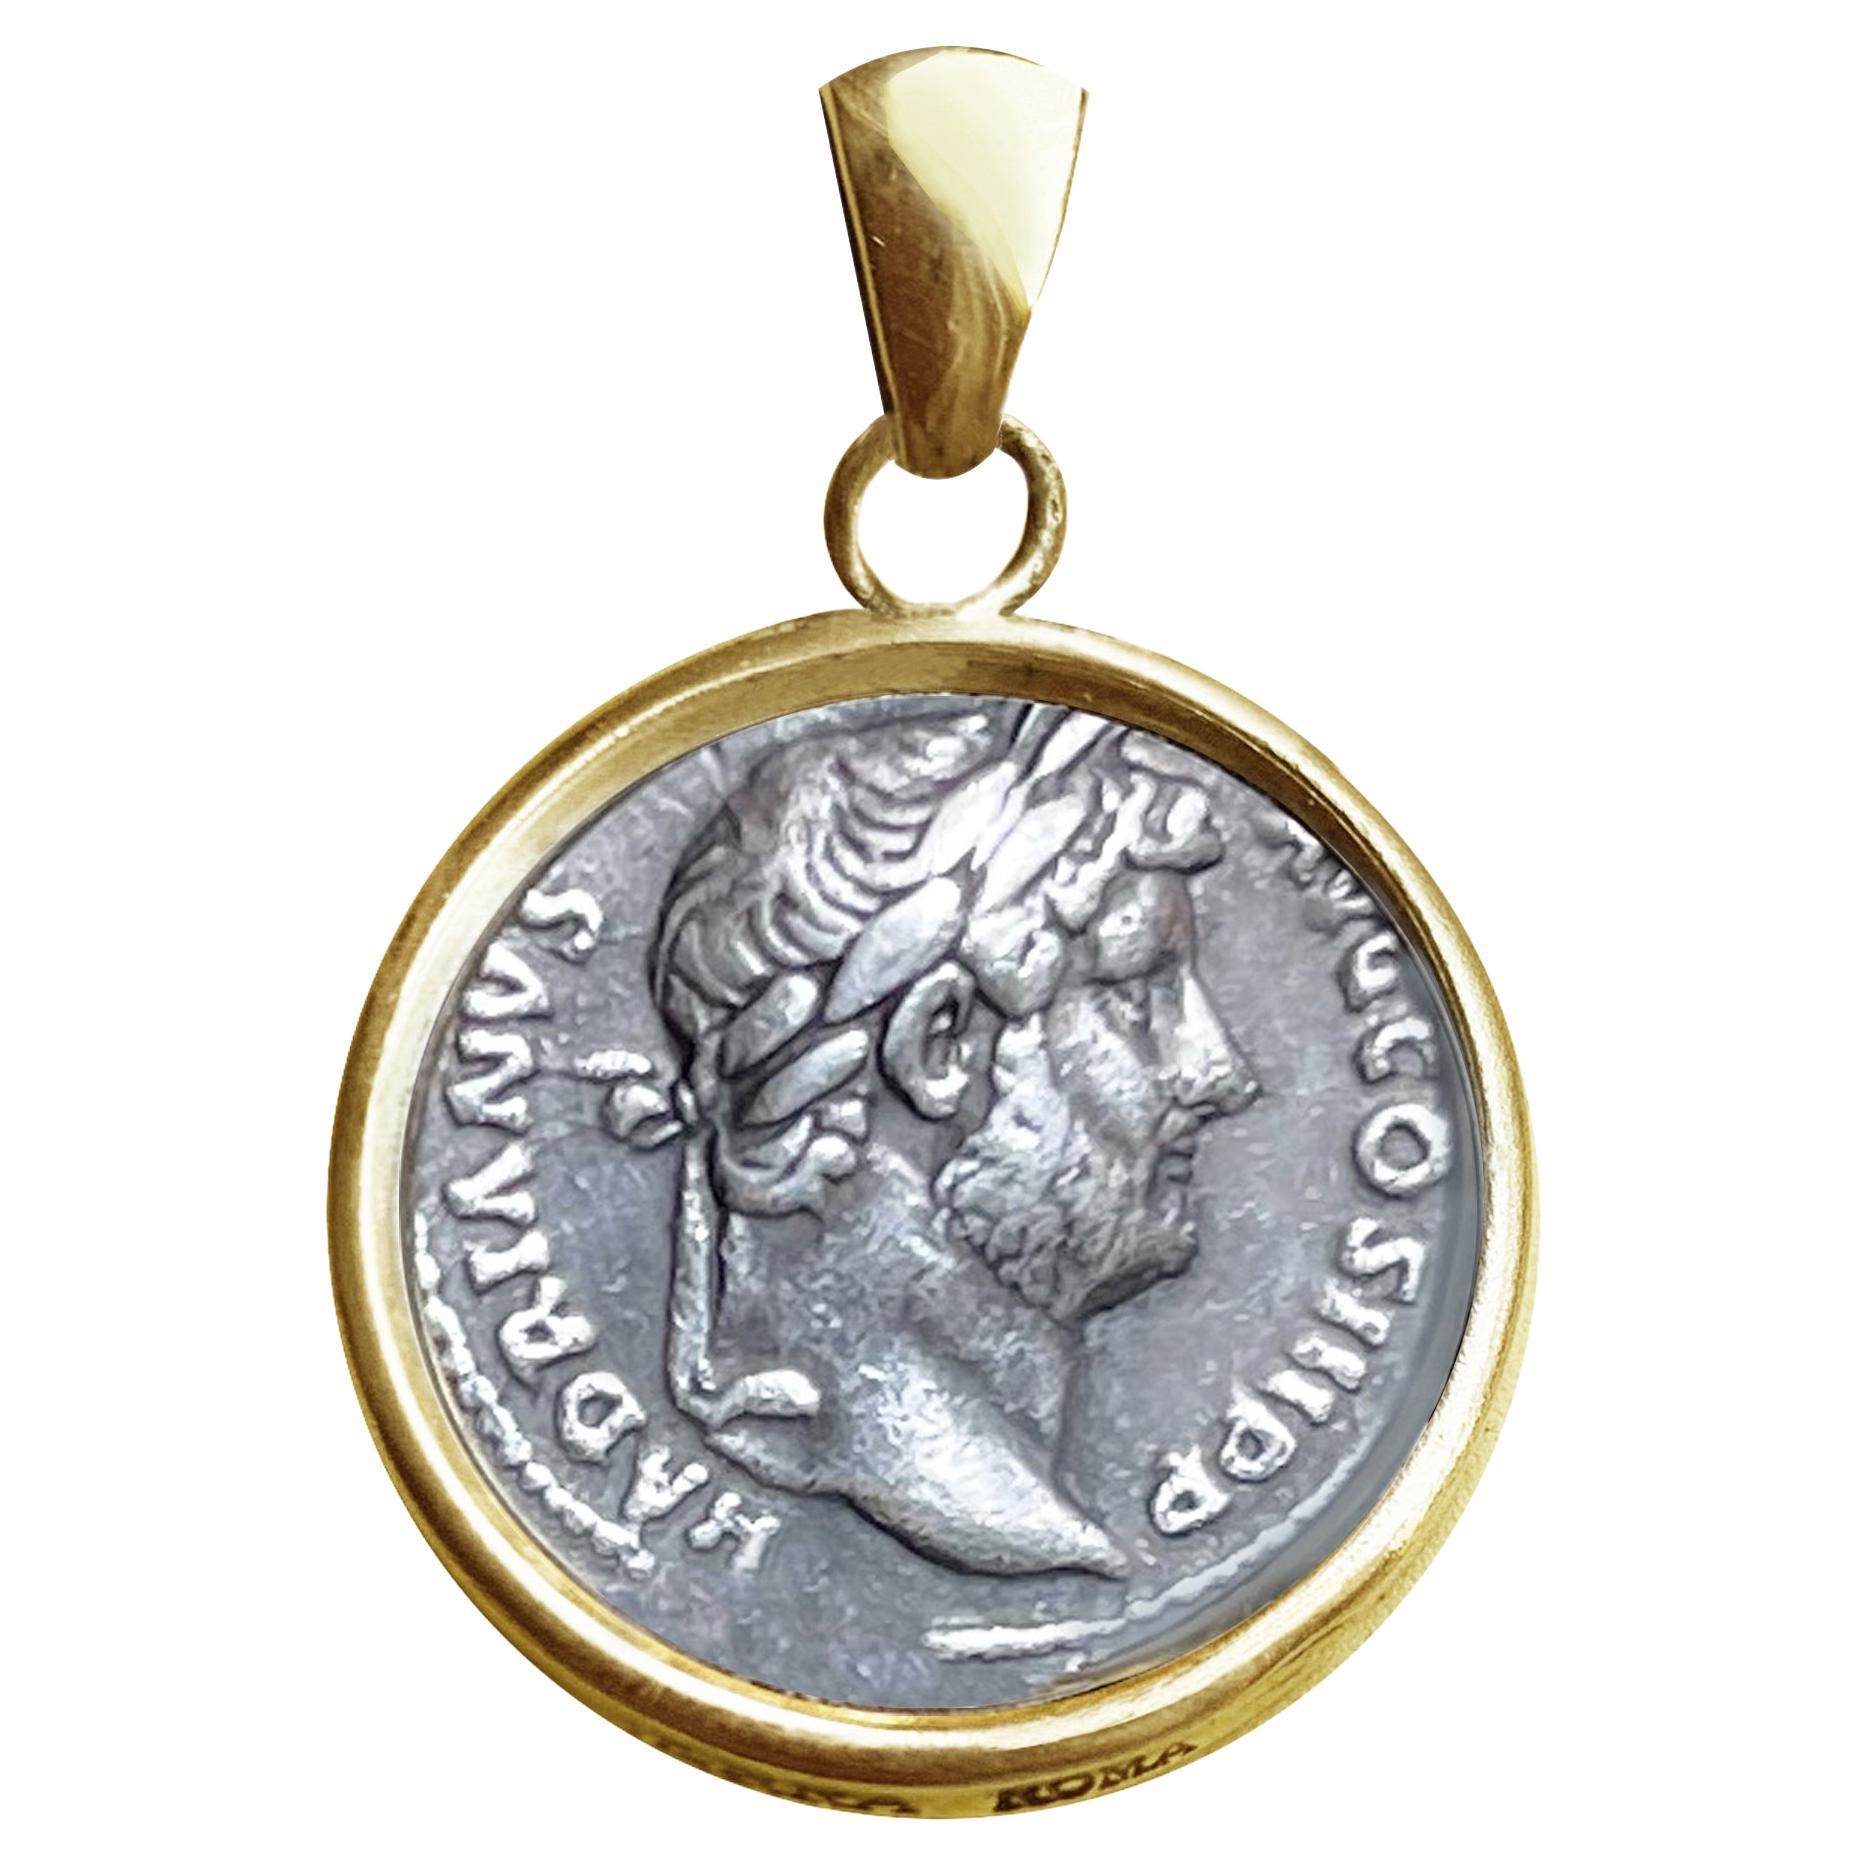 Pendentif authentique en or 18 carats avec pièce d'argent romaine avec Emp. Hadrien "2e siècle". ADS